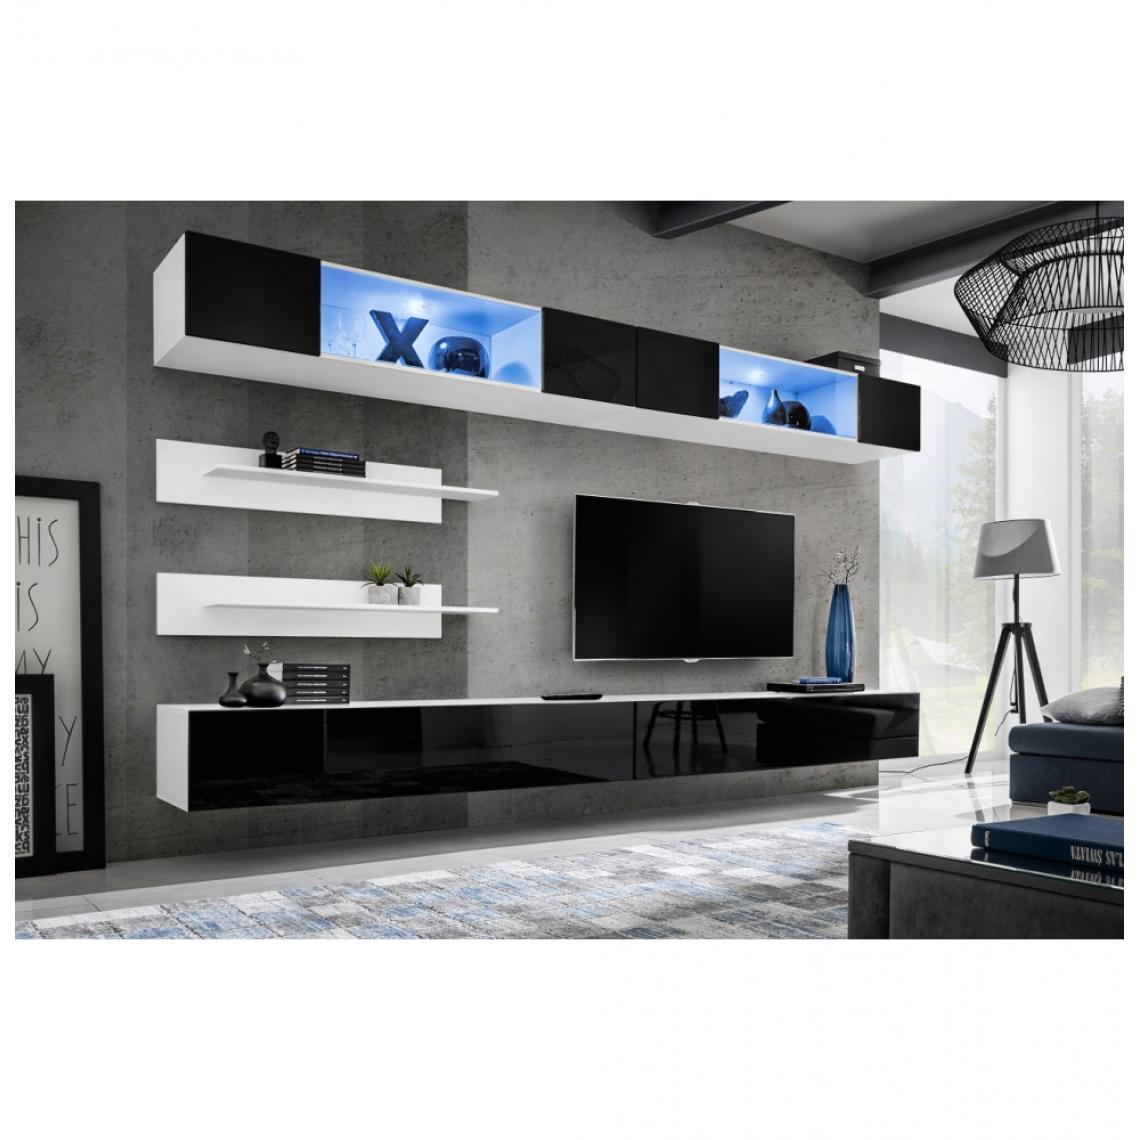 Ac-Deco - Ensemble mural - FLY I - 2 rangements LED - 2 meubles TV - 2 étagères - Blanc et noir - Modèle 2 - Meubles TV, Hi-Fi